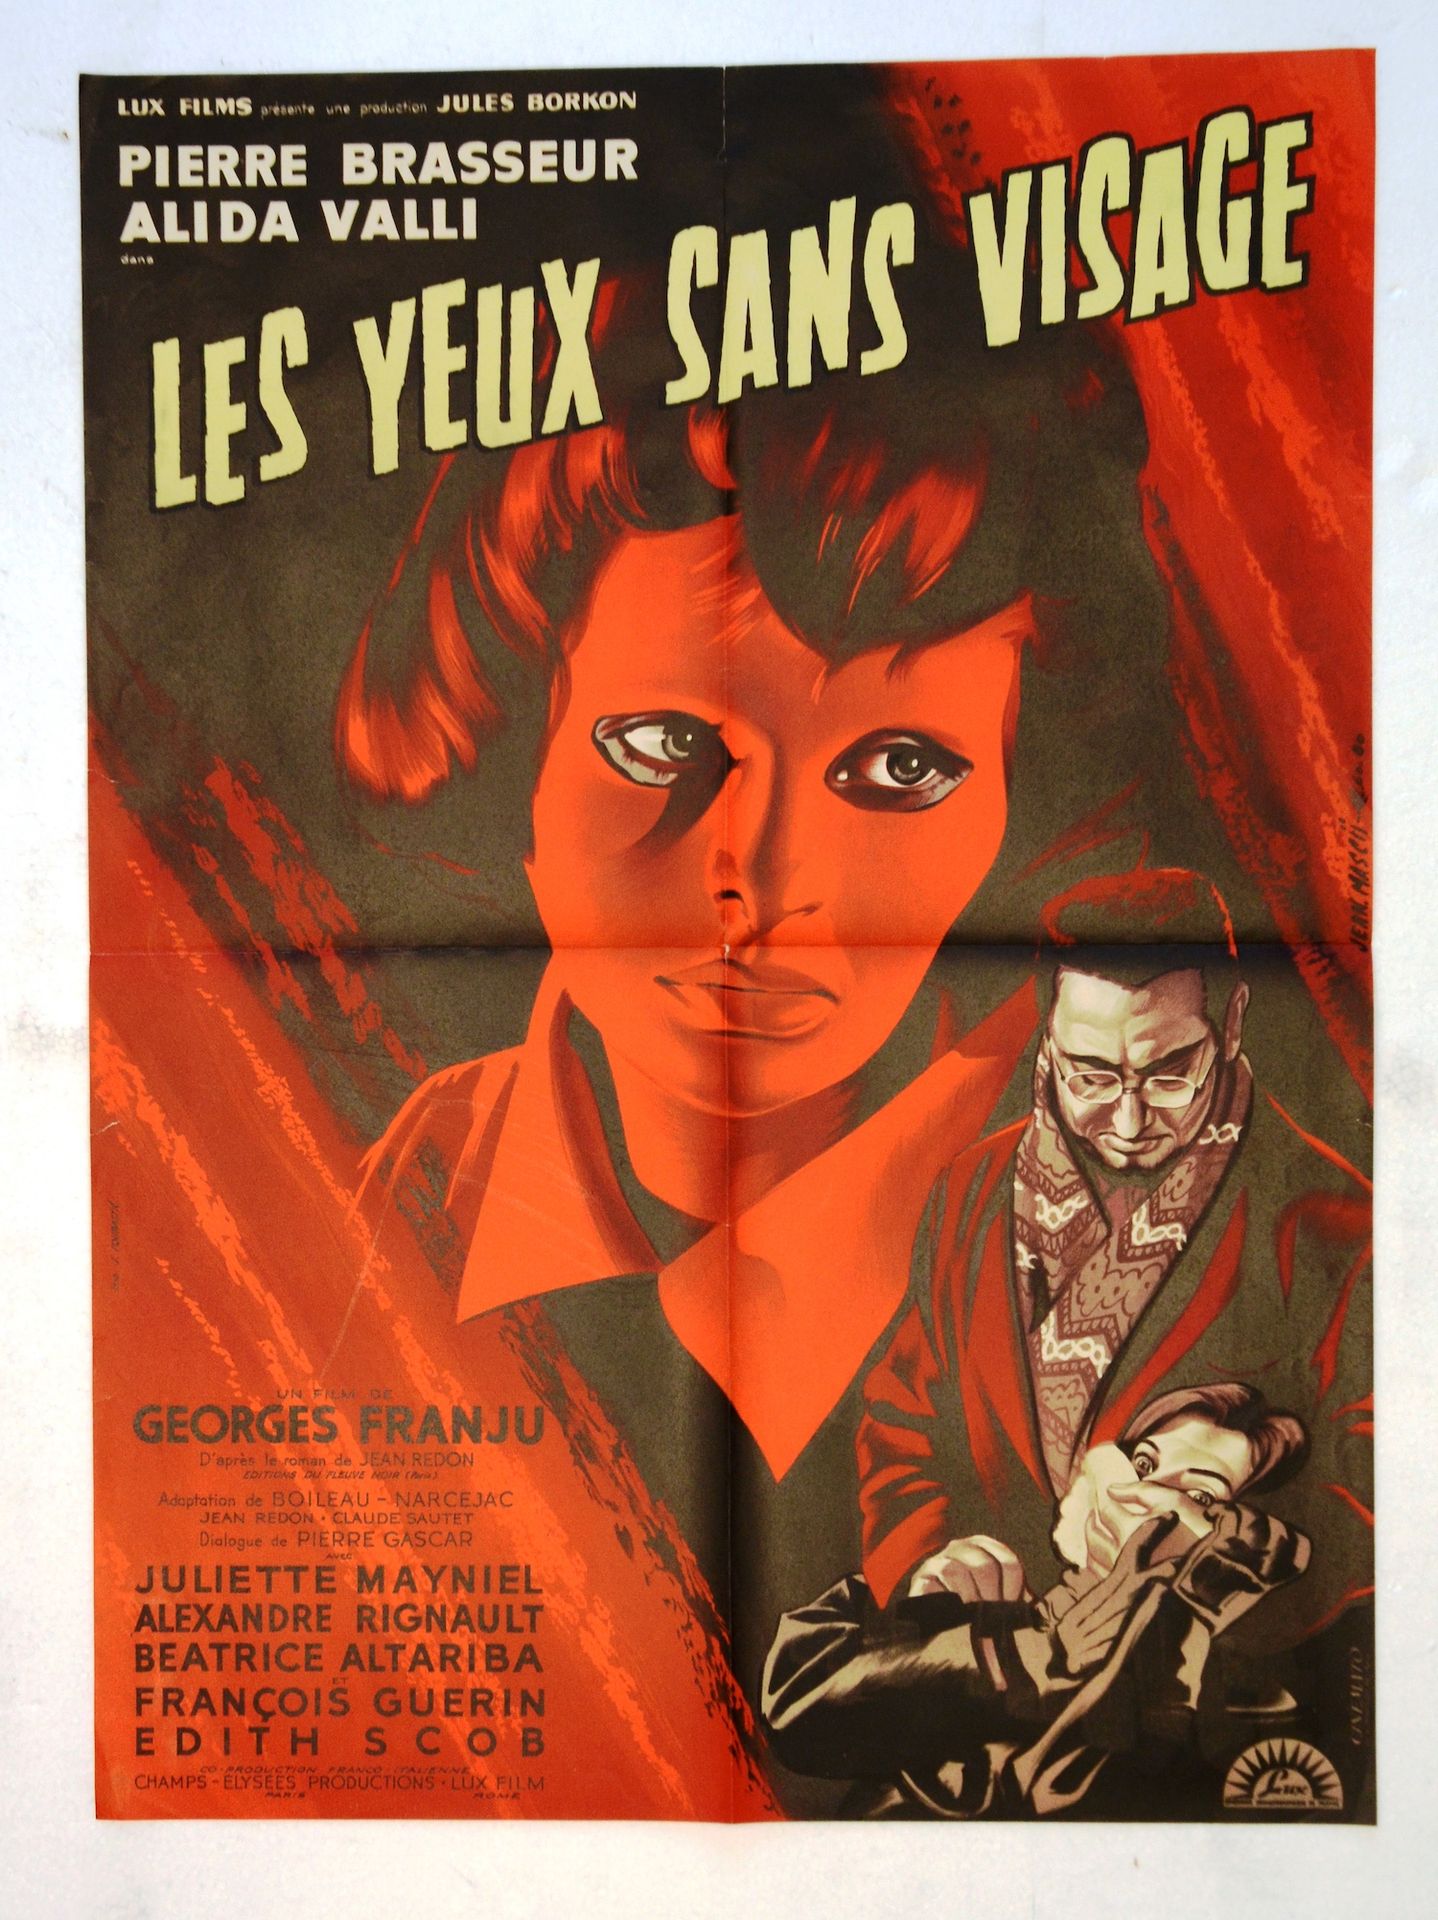 Null 无脸的眼睛 
年份: 1960年，法国海报
导演: 乔治-弗朗朱
演员：皮埃尔-布拉瑟尔，阿丽达-瓦利 
工作室：Lux 
打印: Cinemato &hellip;